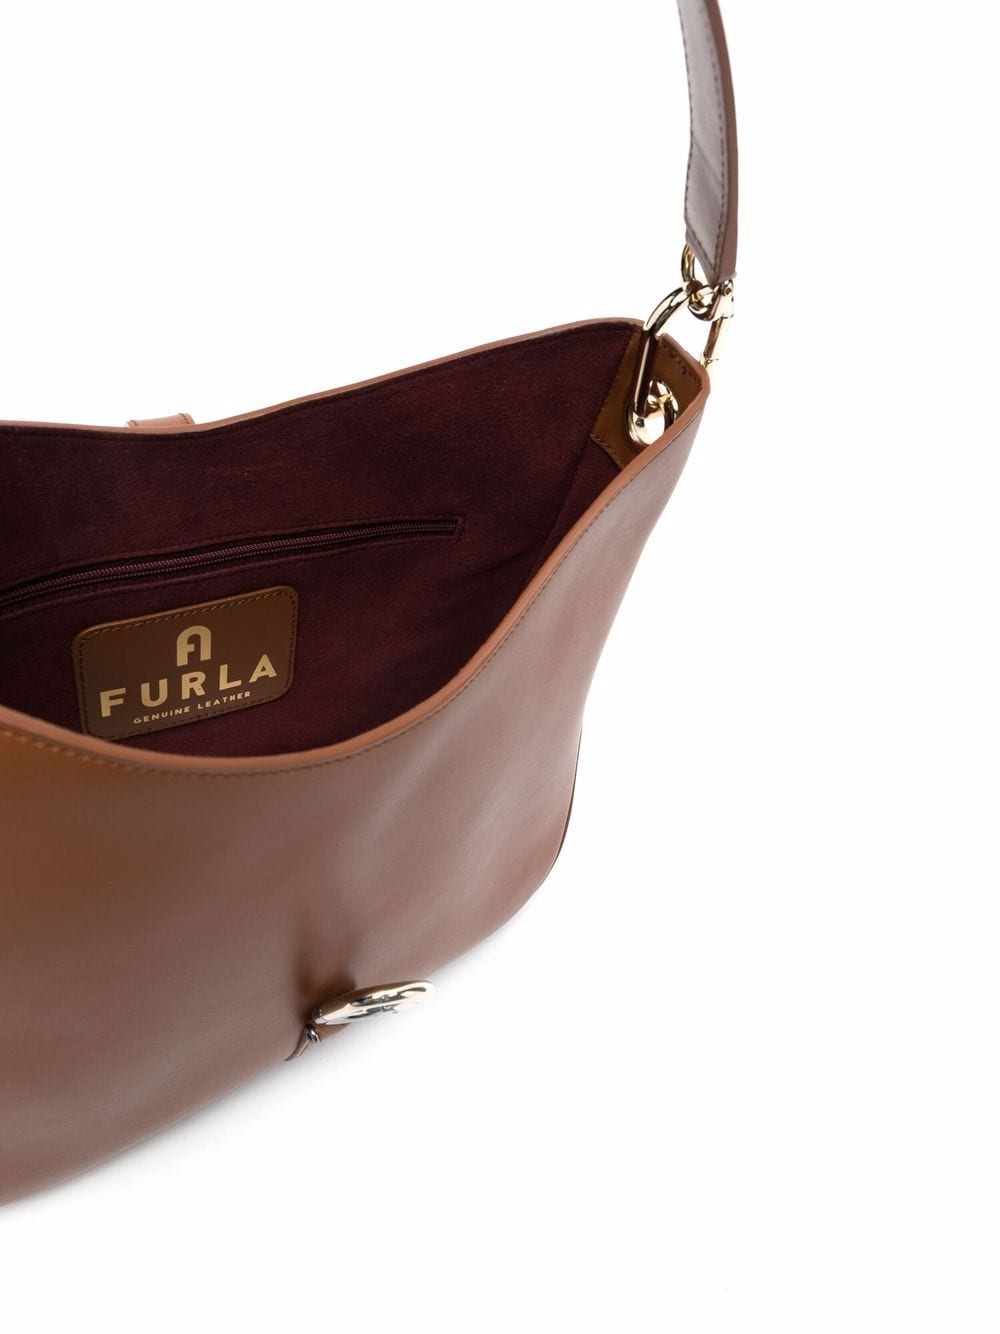 фото Furla сумка-тоут среднего размера